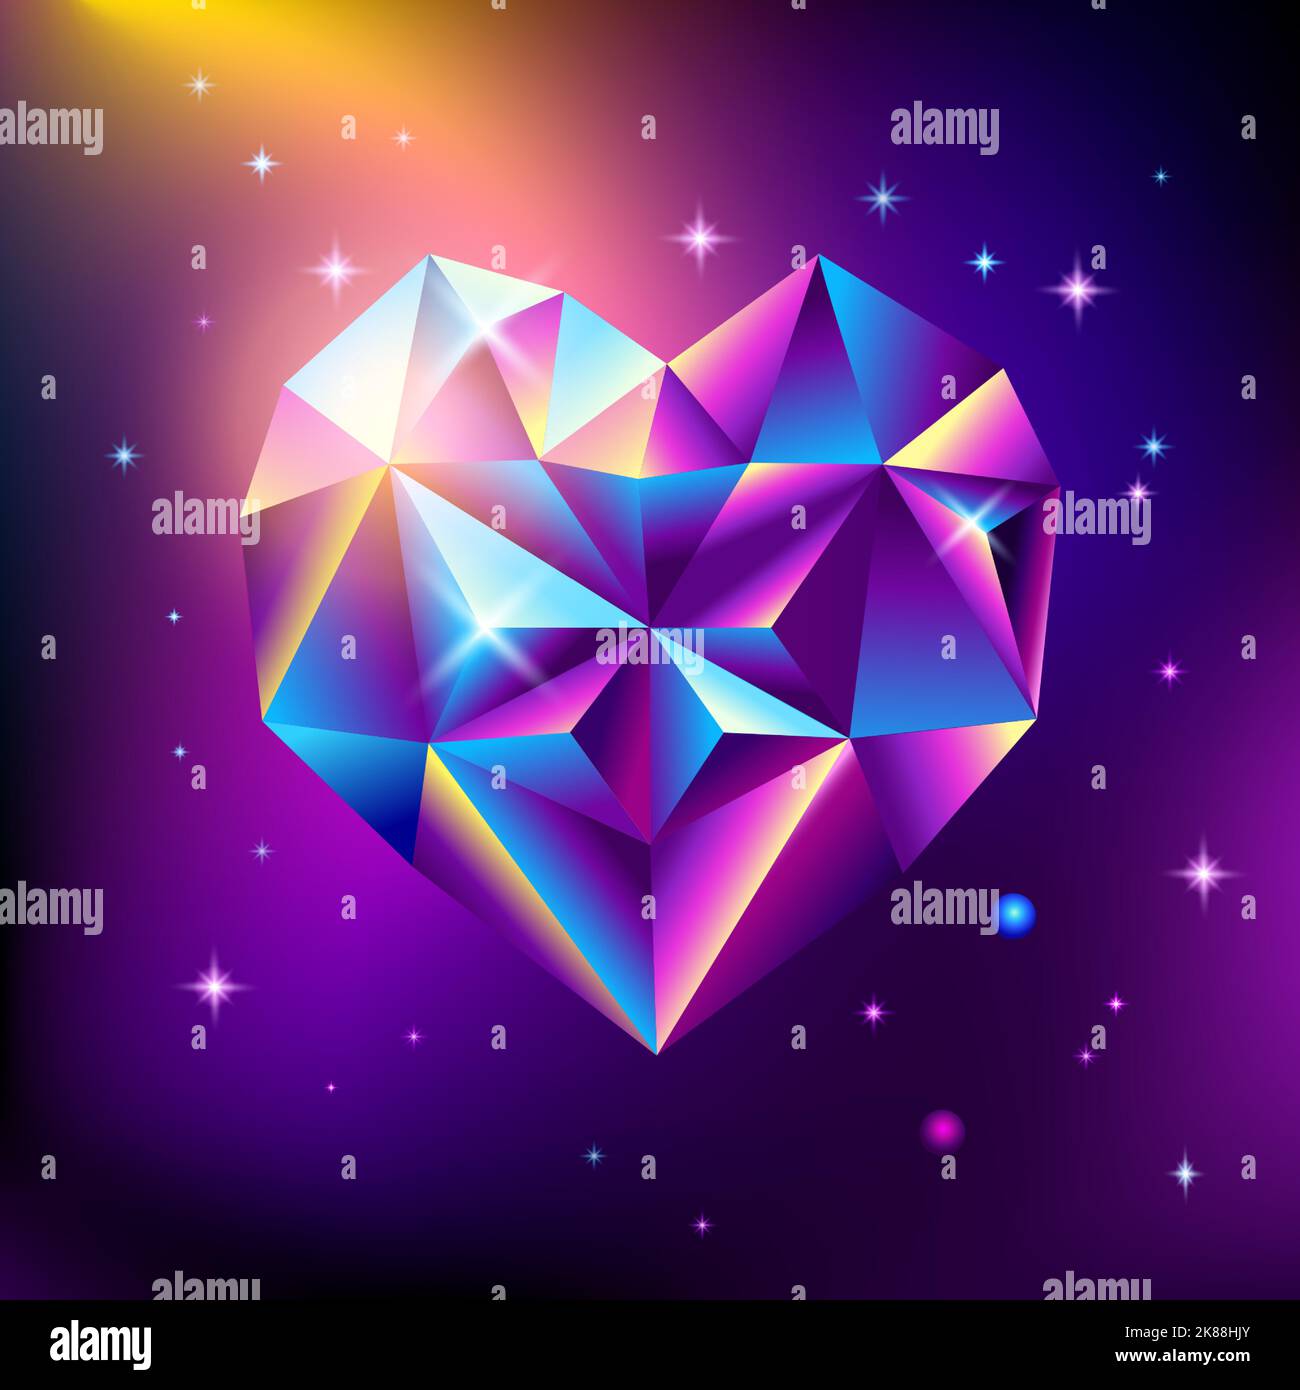 Affiche cosmique tendance abstraite avec pierres en cristal en forme de coeur forme géométrique dans l'espace. Fond de galaxie néon. style 80s. Affiche avec géométrique Illustration de Vecteur